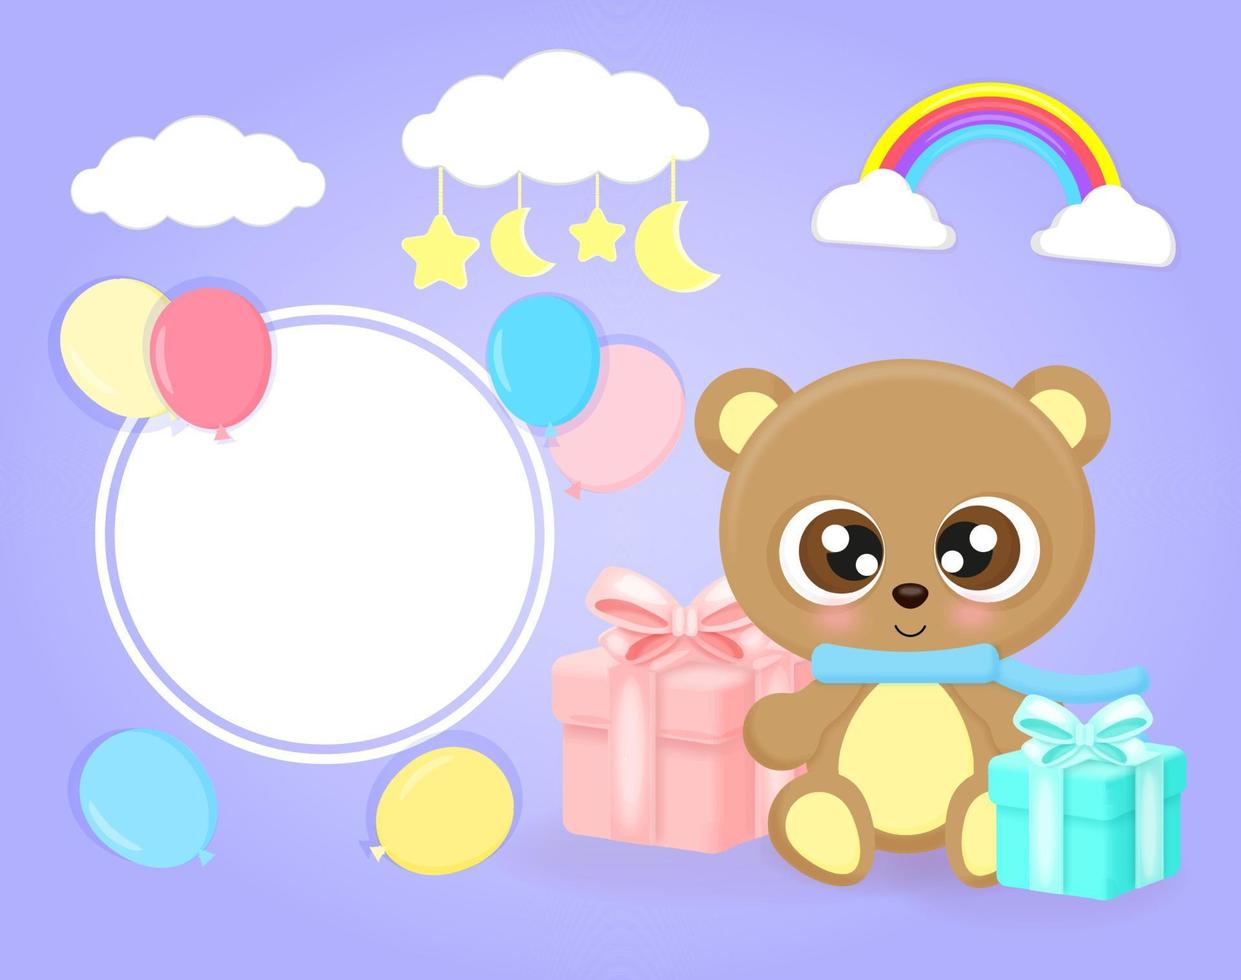 süßes plakat mit kleinem teddybär, luftballons, wolken, geschenken, sternen und mond, flacher realistischer stil, für babyparty, grußkarte, vektorillustration. vektor